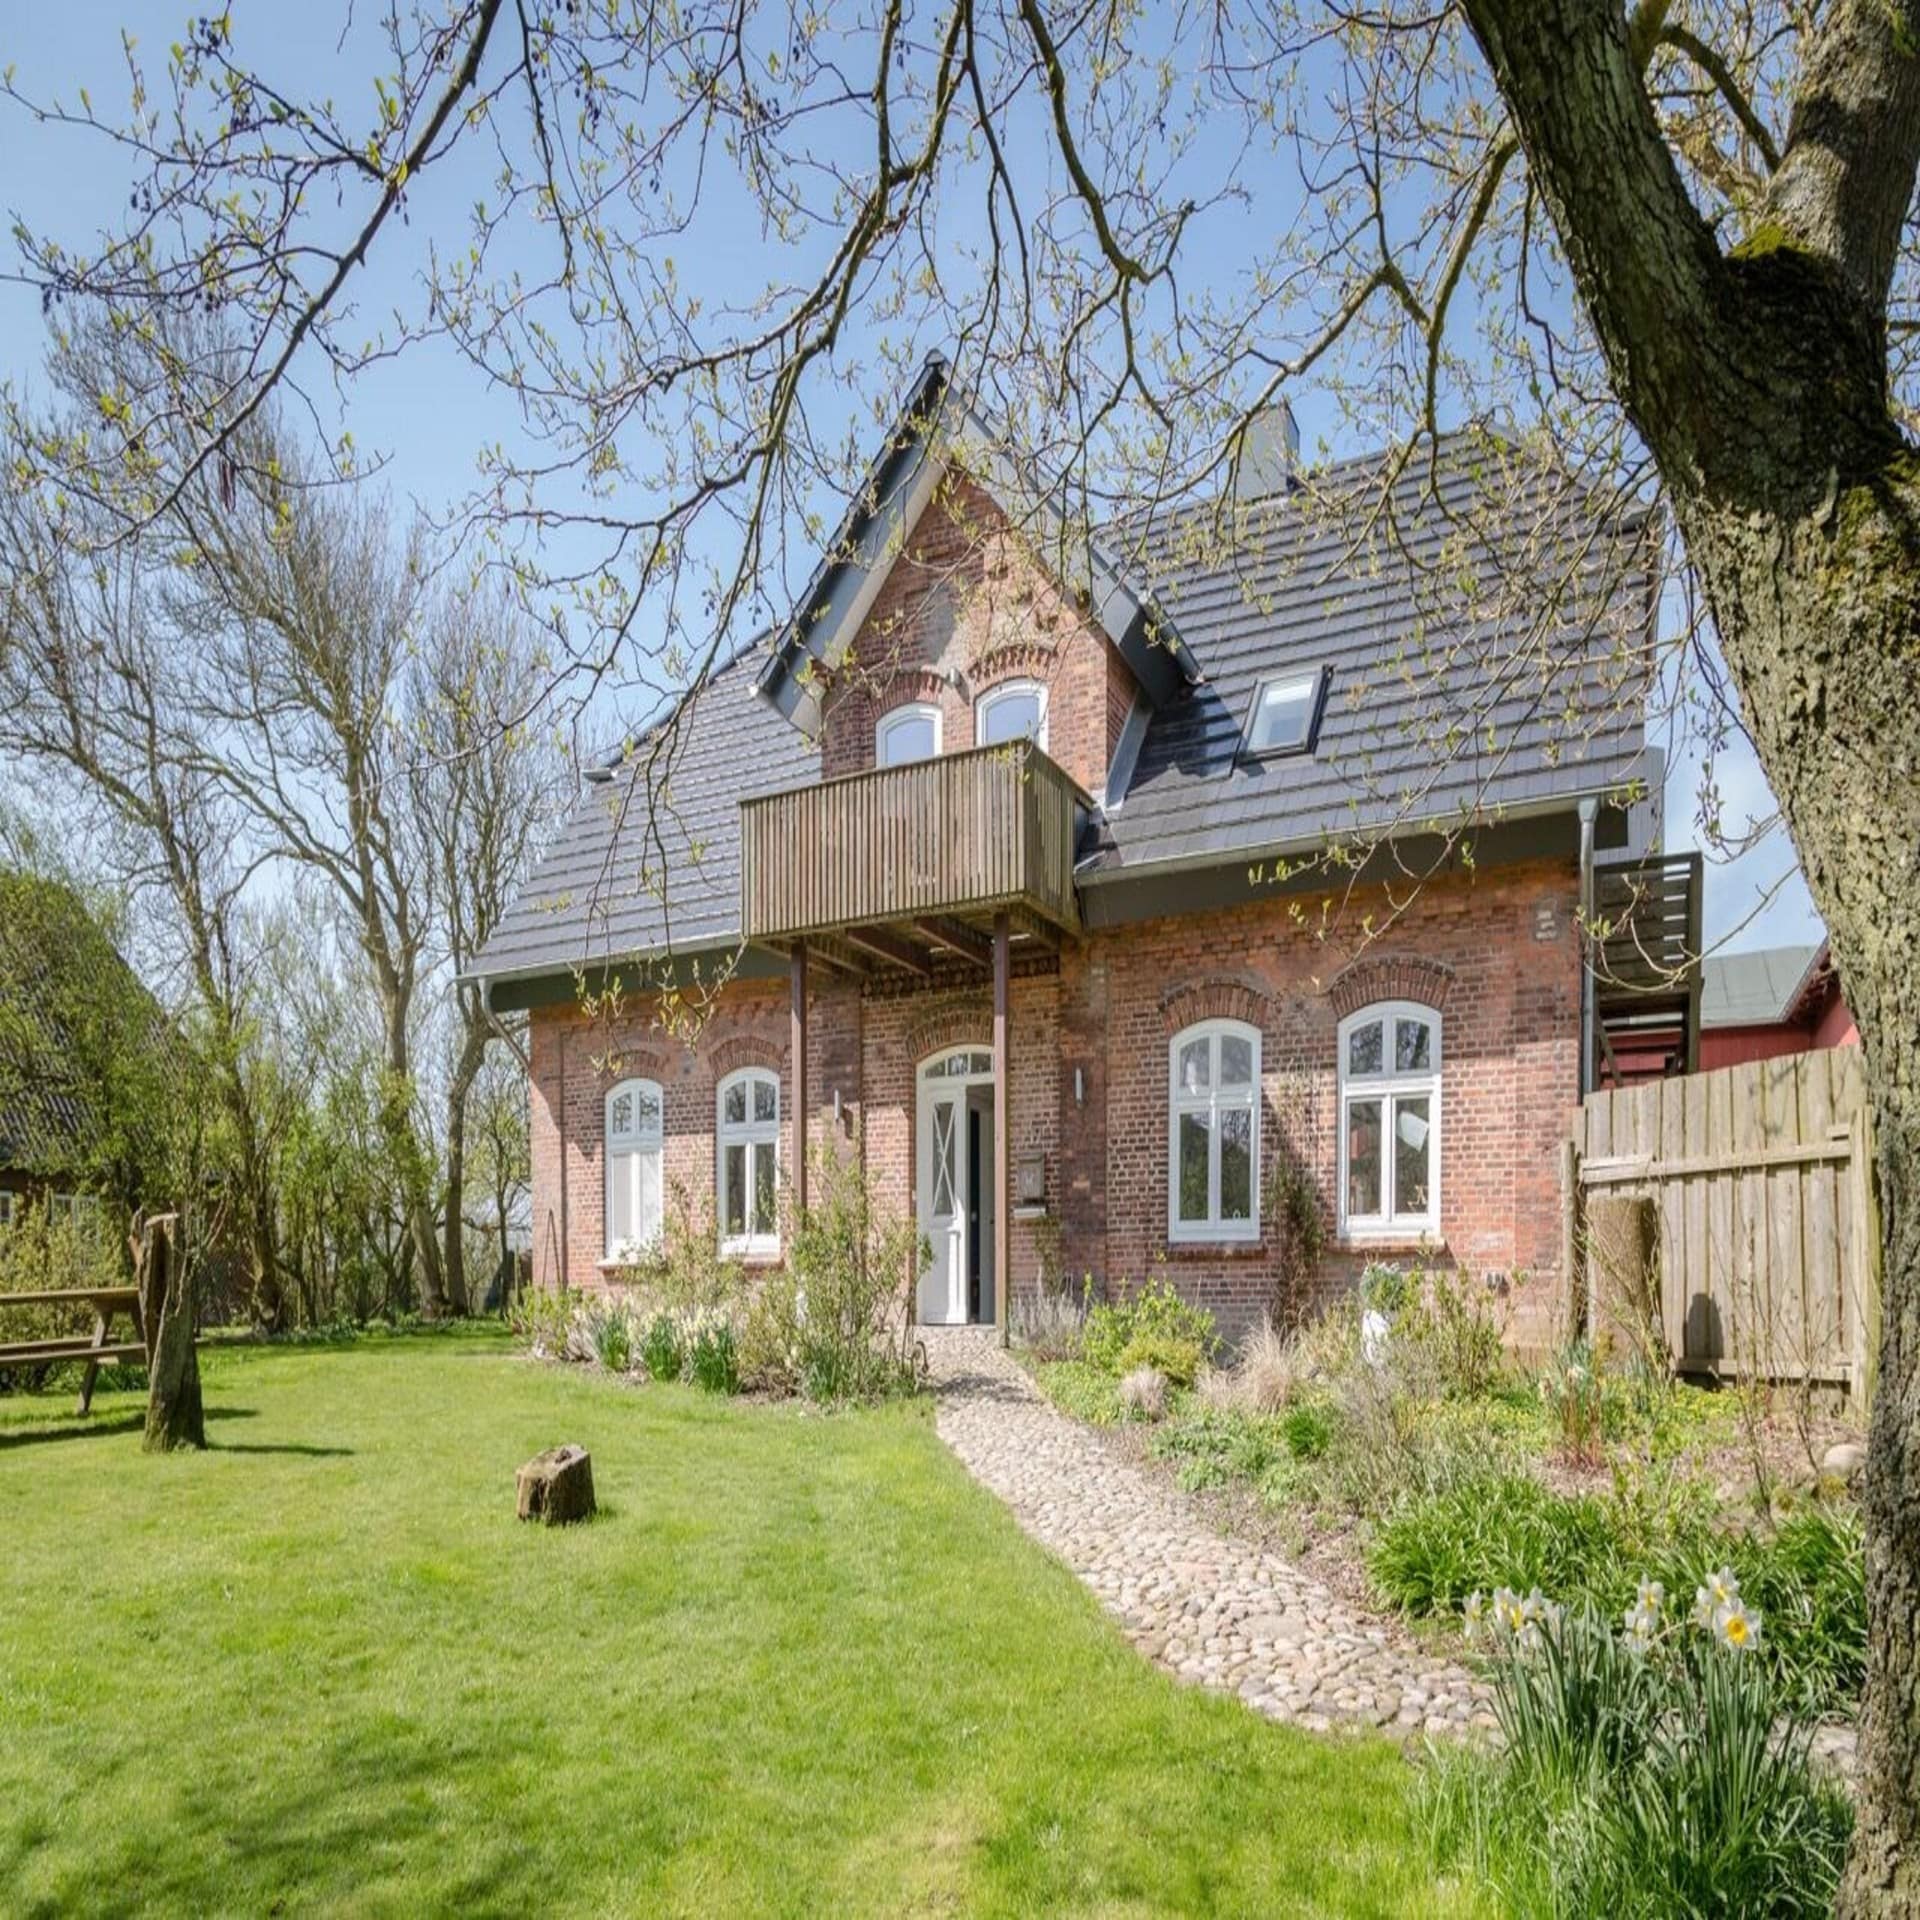 Restauriertes Bauernhaus aus rotem Backstein in einem großen, grünen Garten.